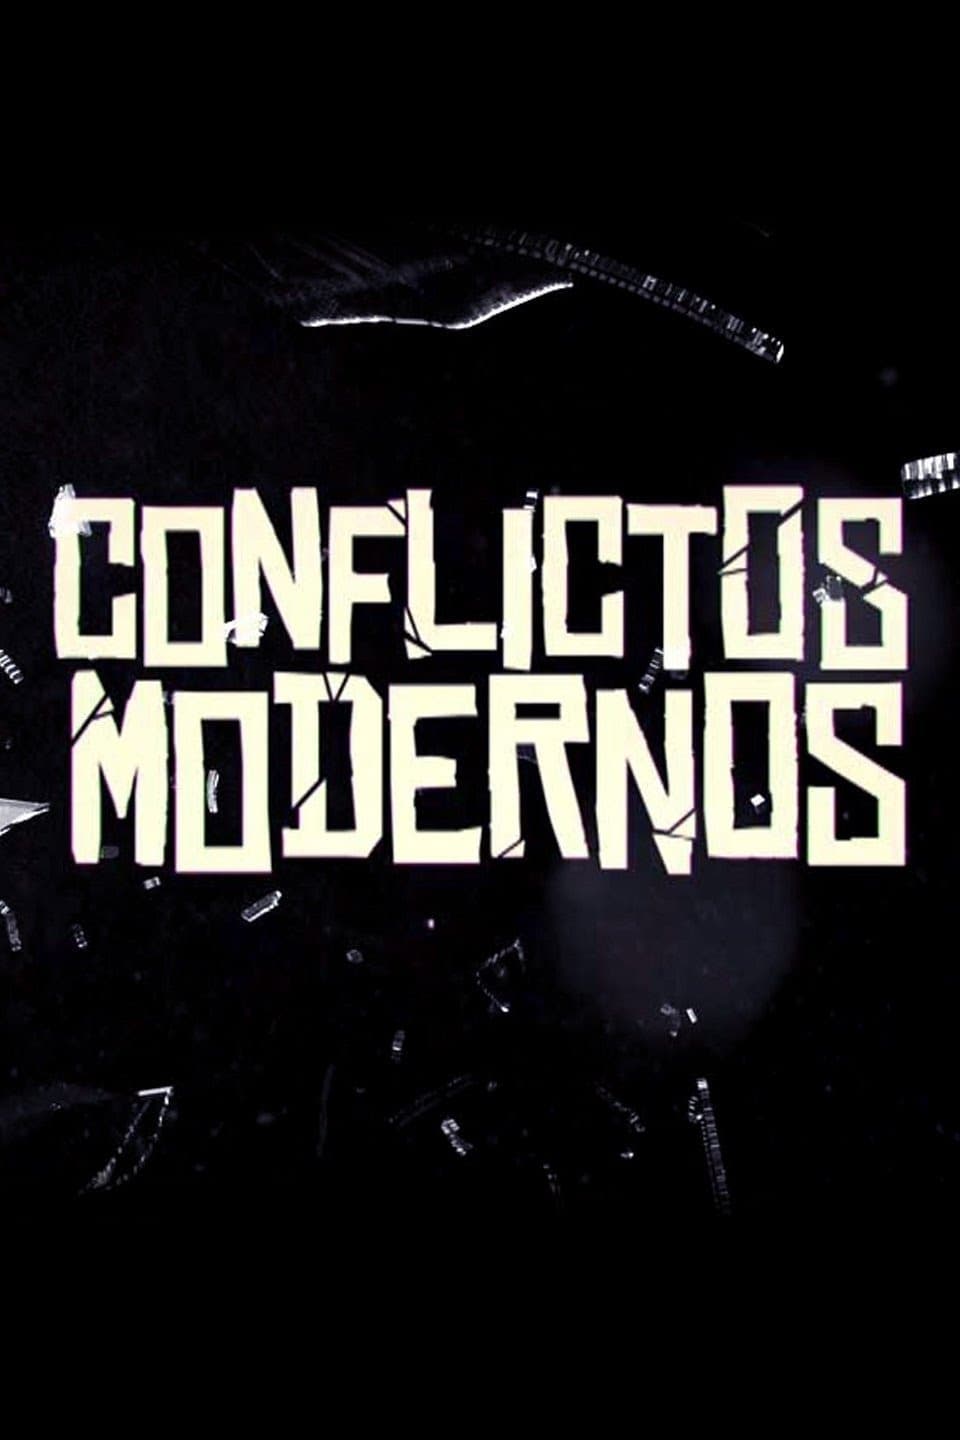 Conflictos modernos